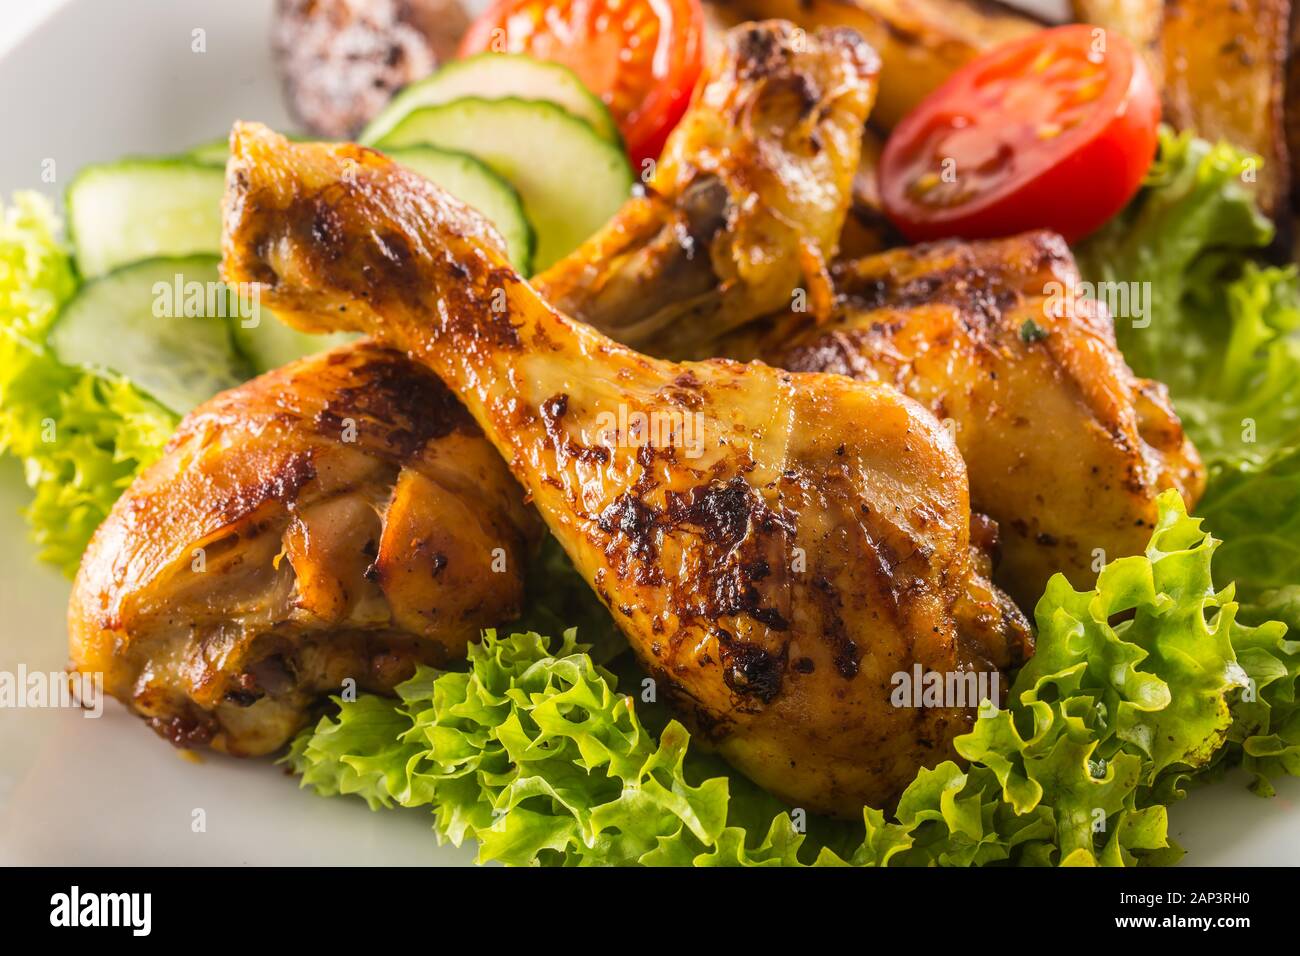 Piernas de pollo asado con ensalada de lechuga y tomate Fotografía de stock  - Alamy